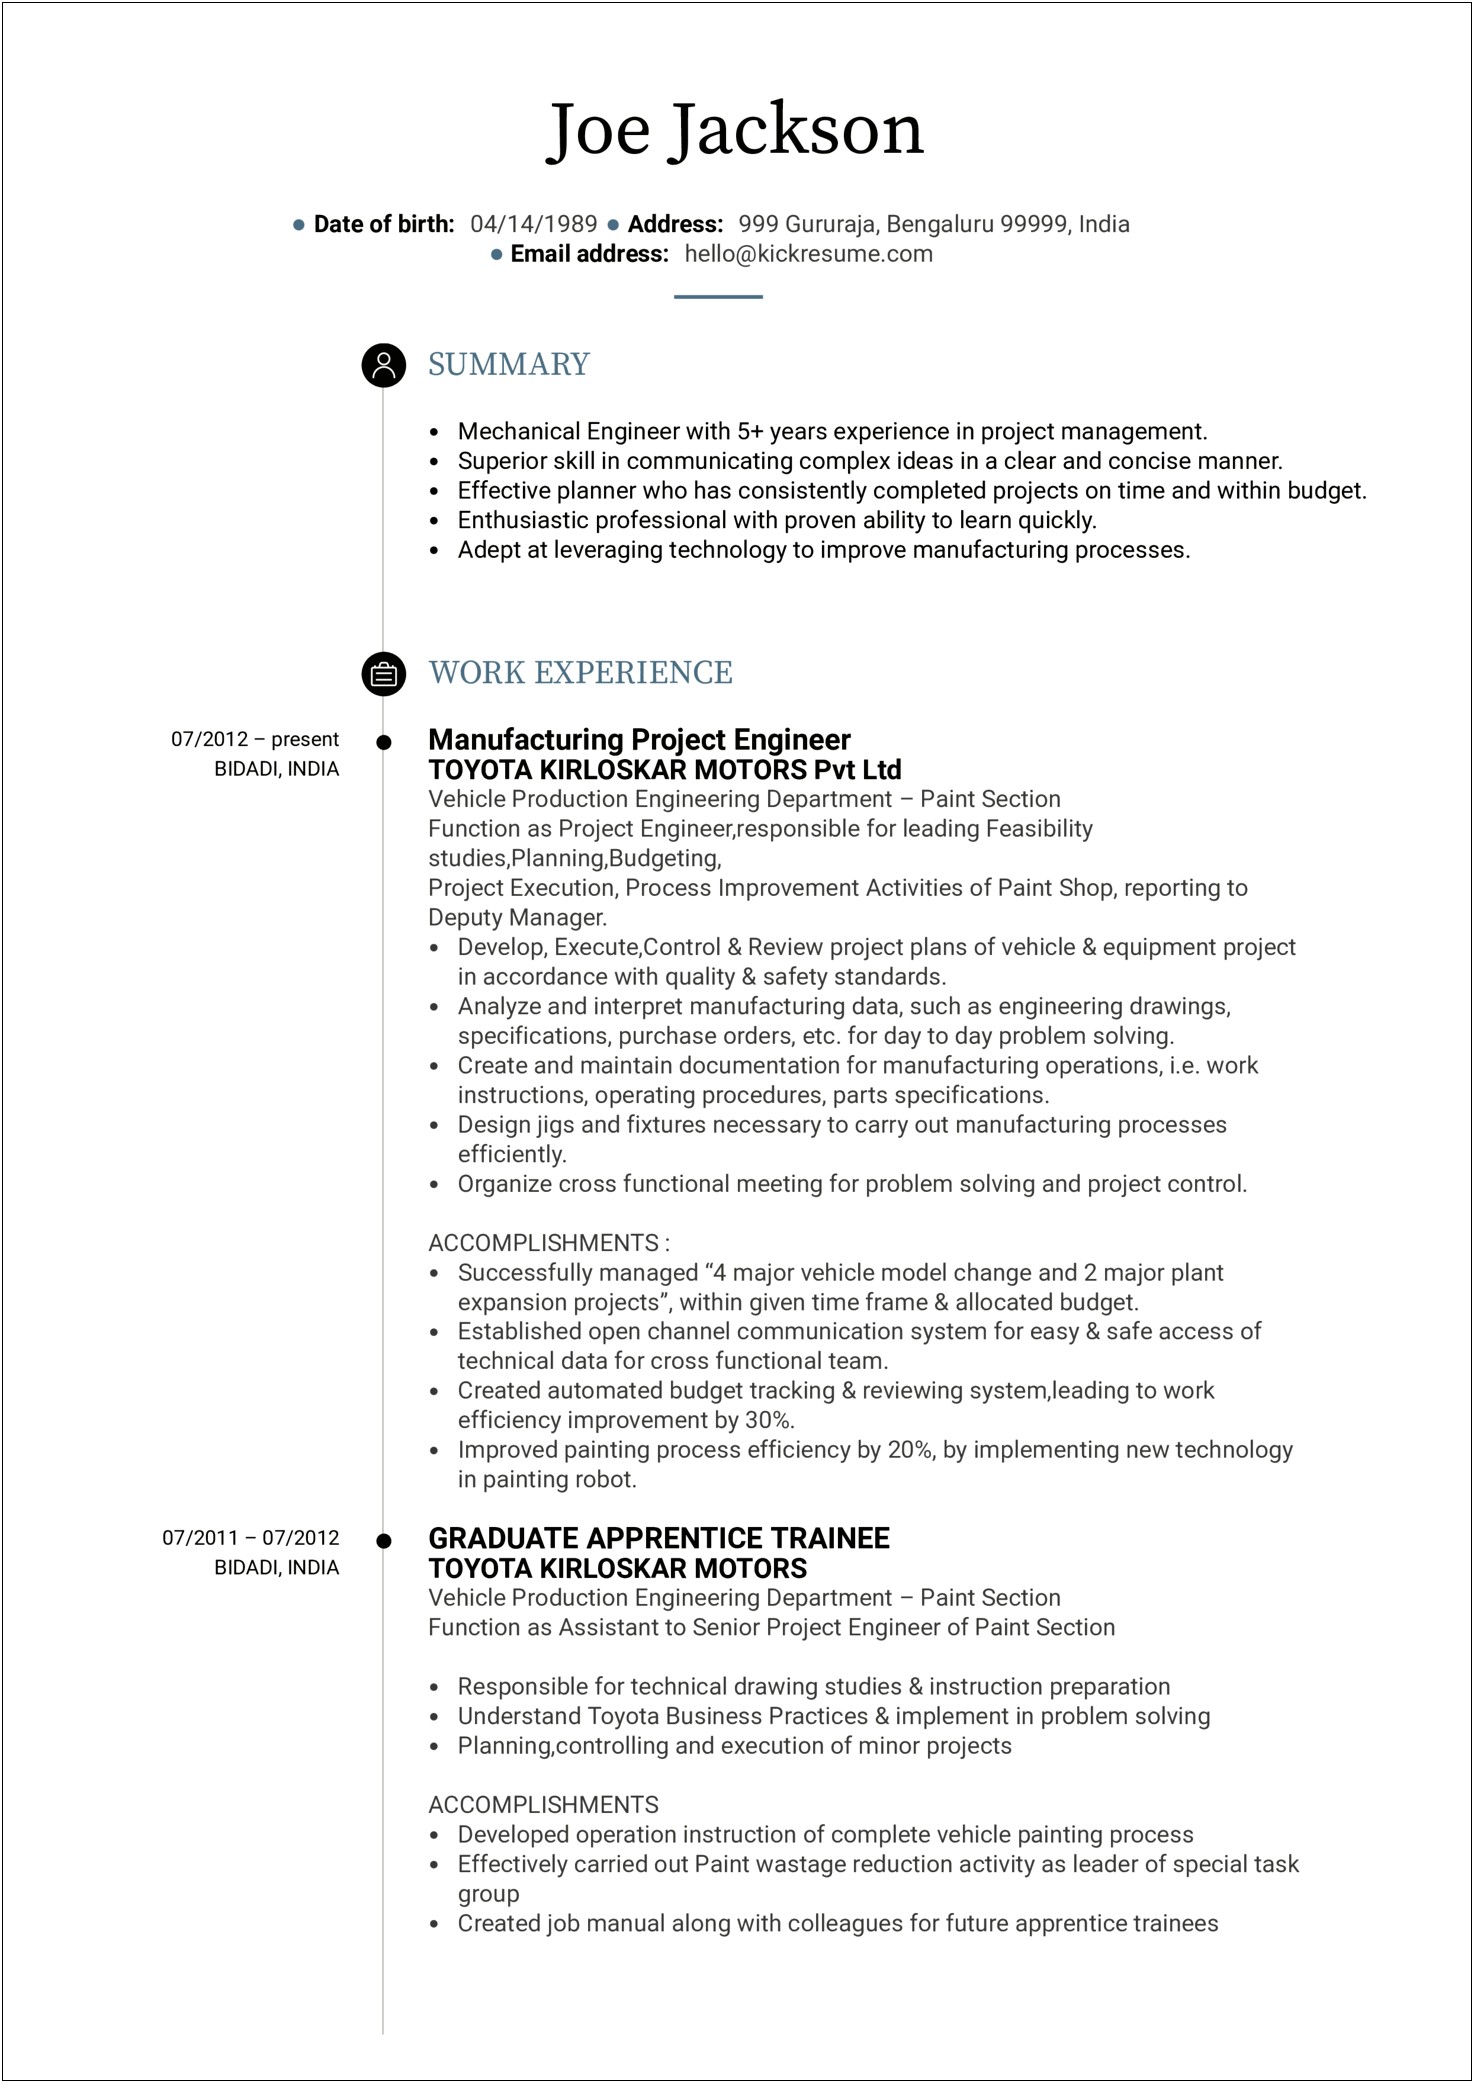 Model Job Description For Resume